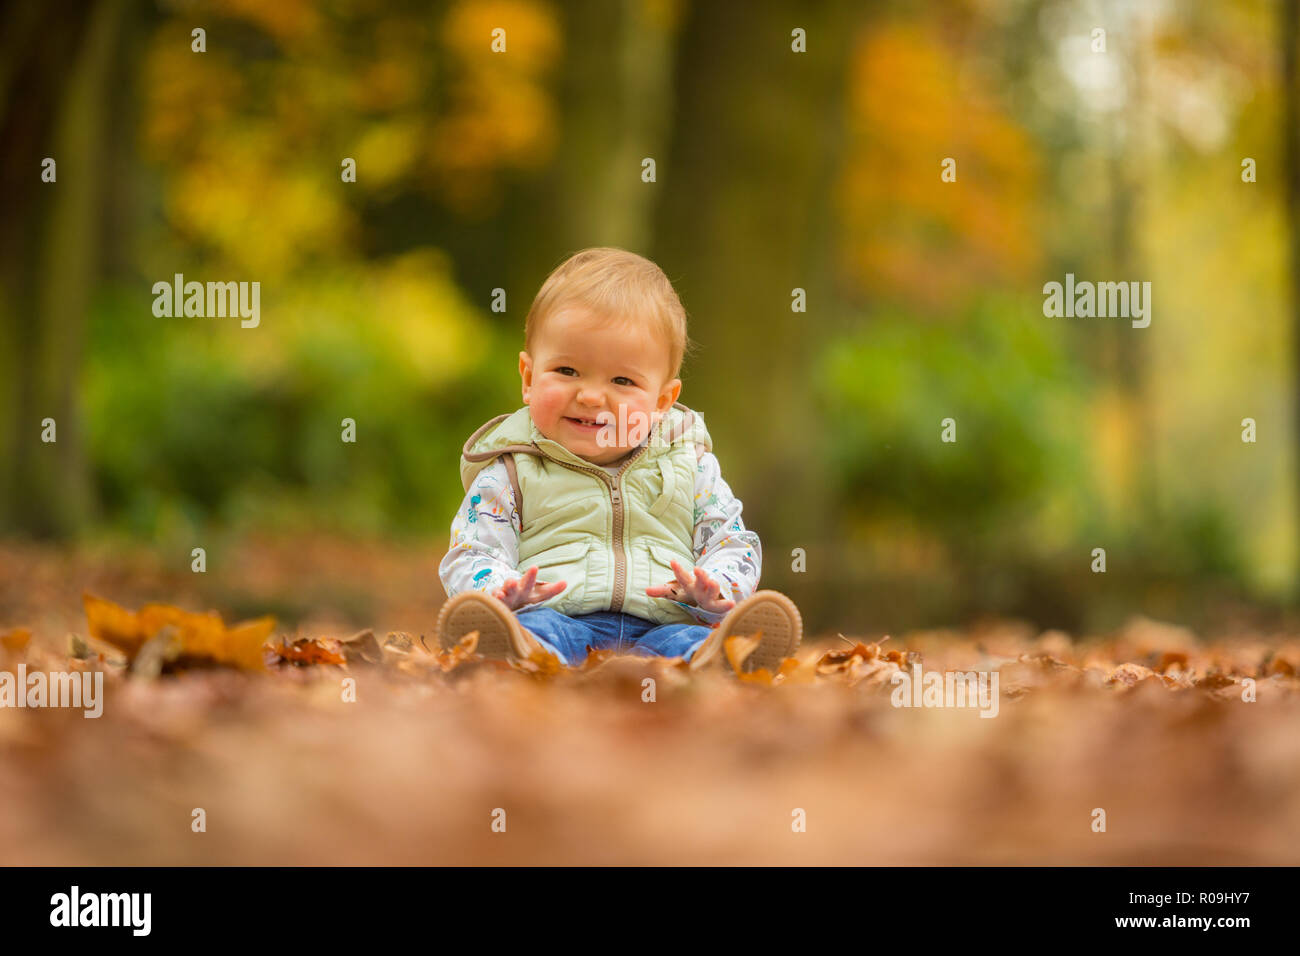 18 mois white caucasian boy assis parmi les feuilles d'automne smiling et sain Banque D'Images